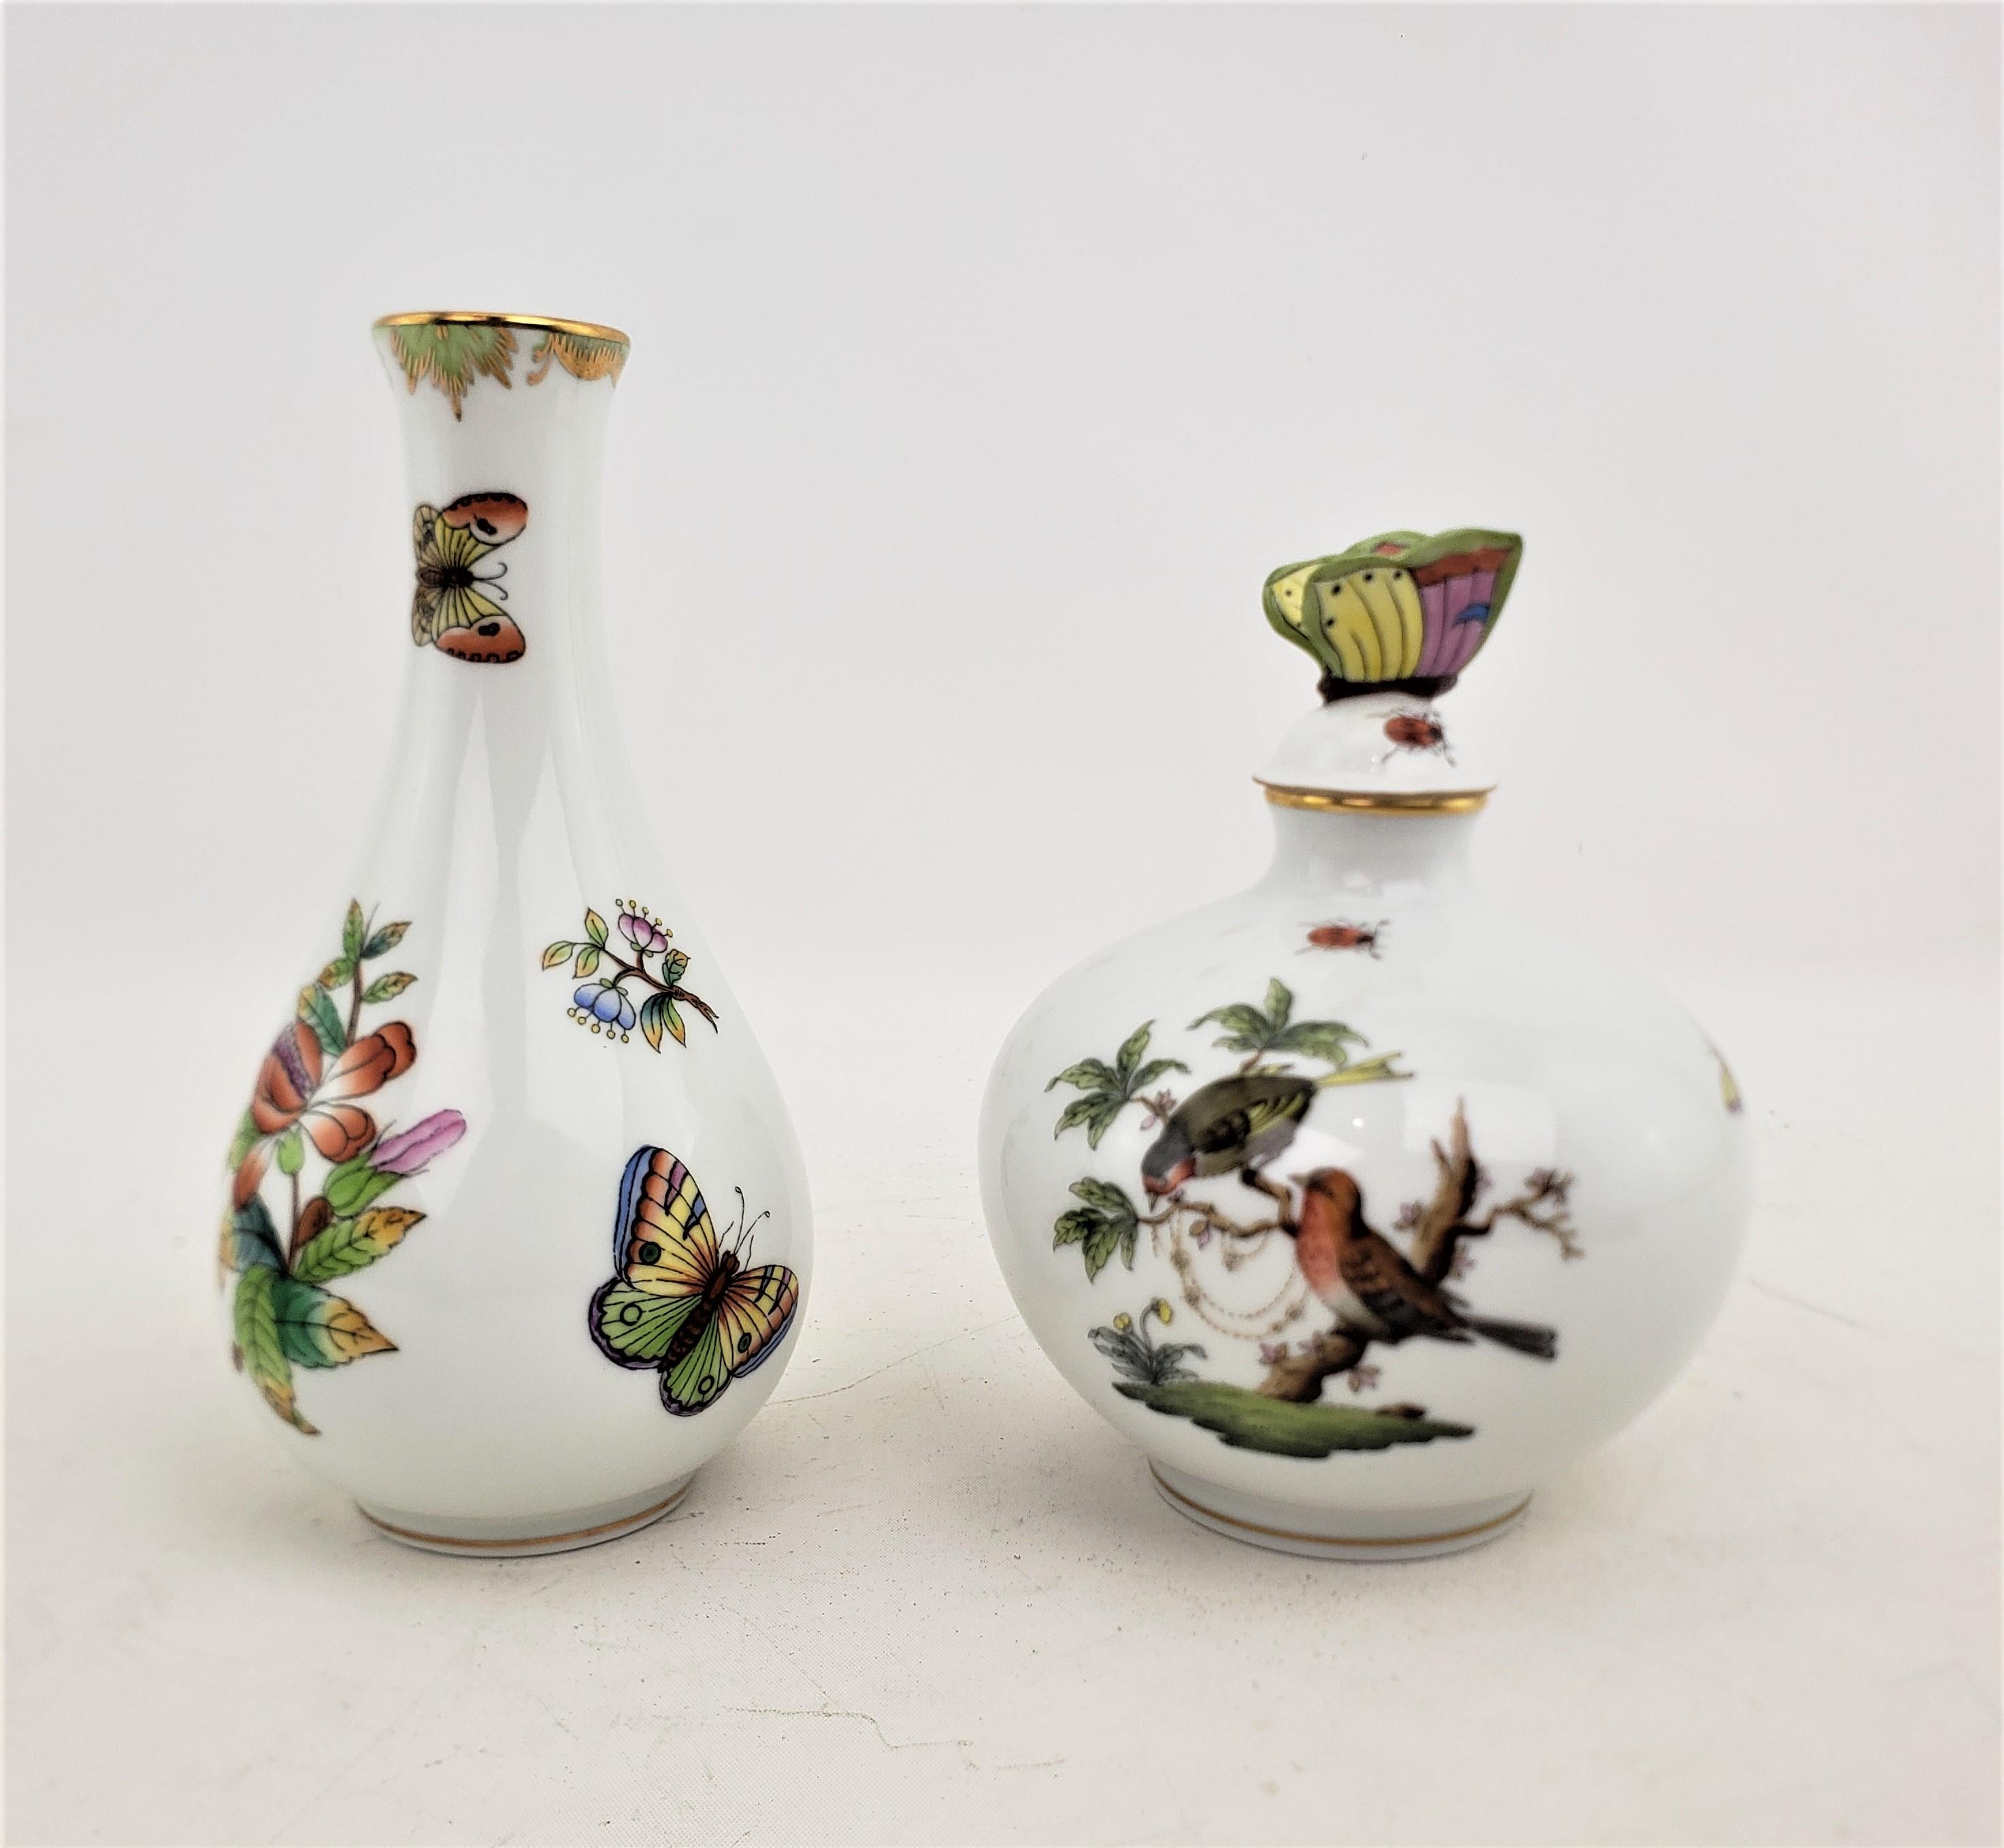 Dieser Parfümflakon und diese Vase wurden beide von der bekannten ungarischen Manufaktur Herend um 1970 in einem viktorianischen Stil hergestellt. Die Paare bestehen beide aus Porzellan, das kunstvoll von Hand bemalt wurde. Der Parfümflakon ist mit